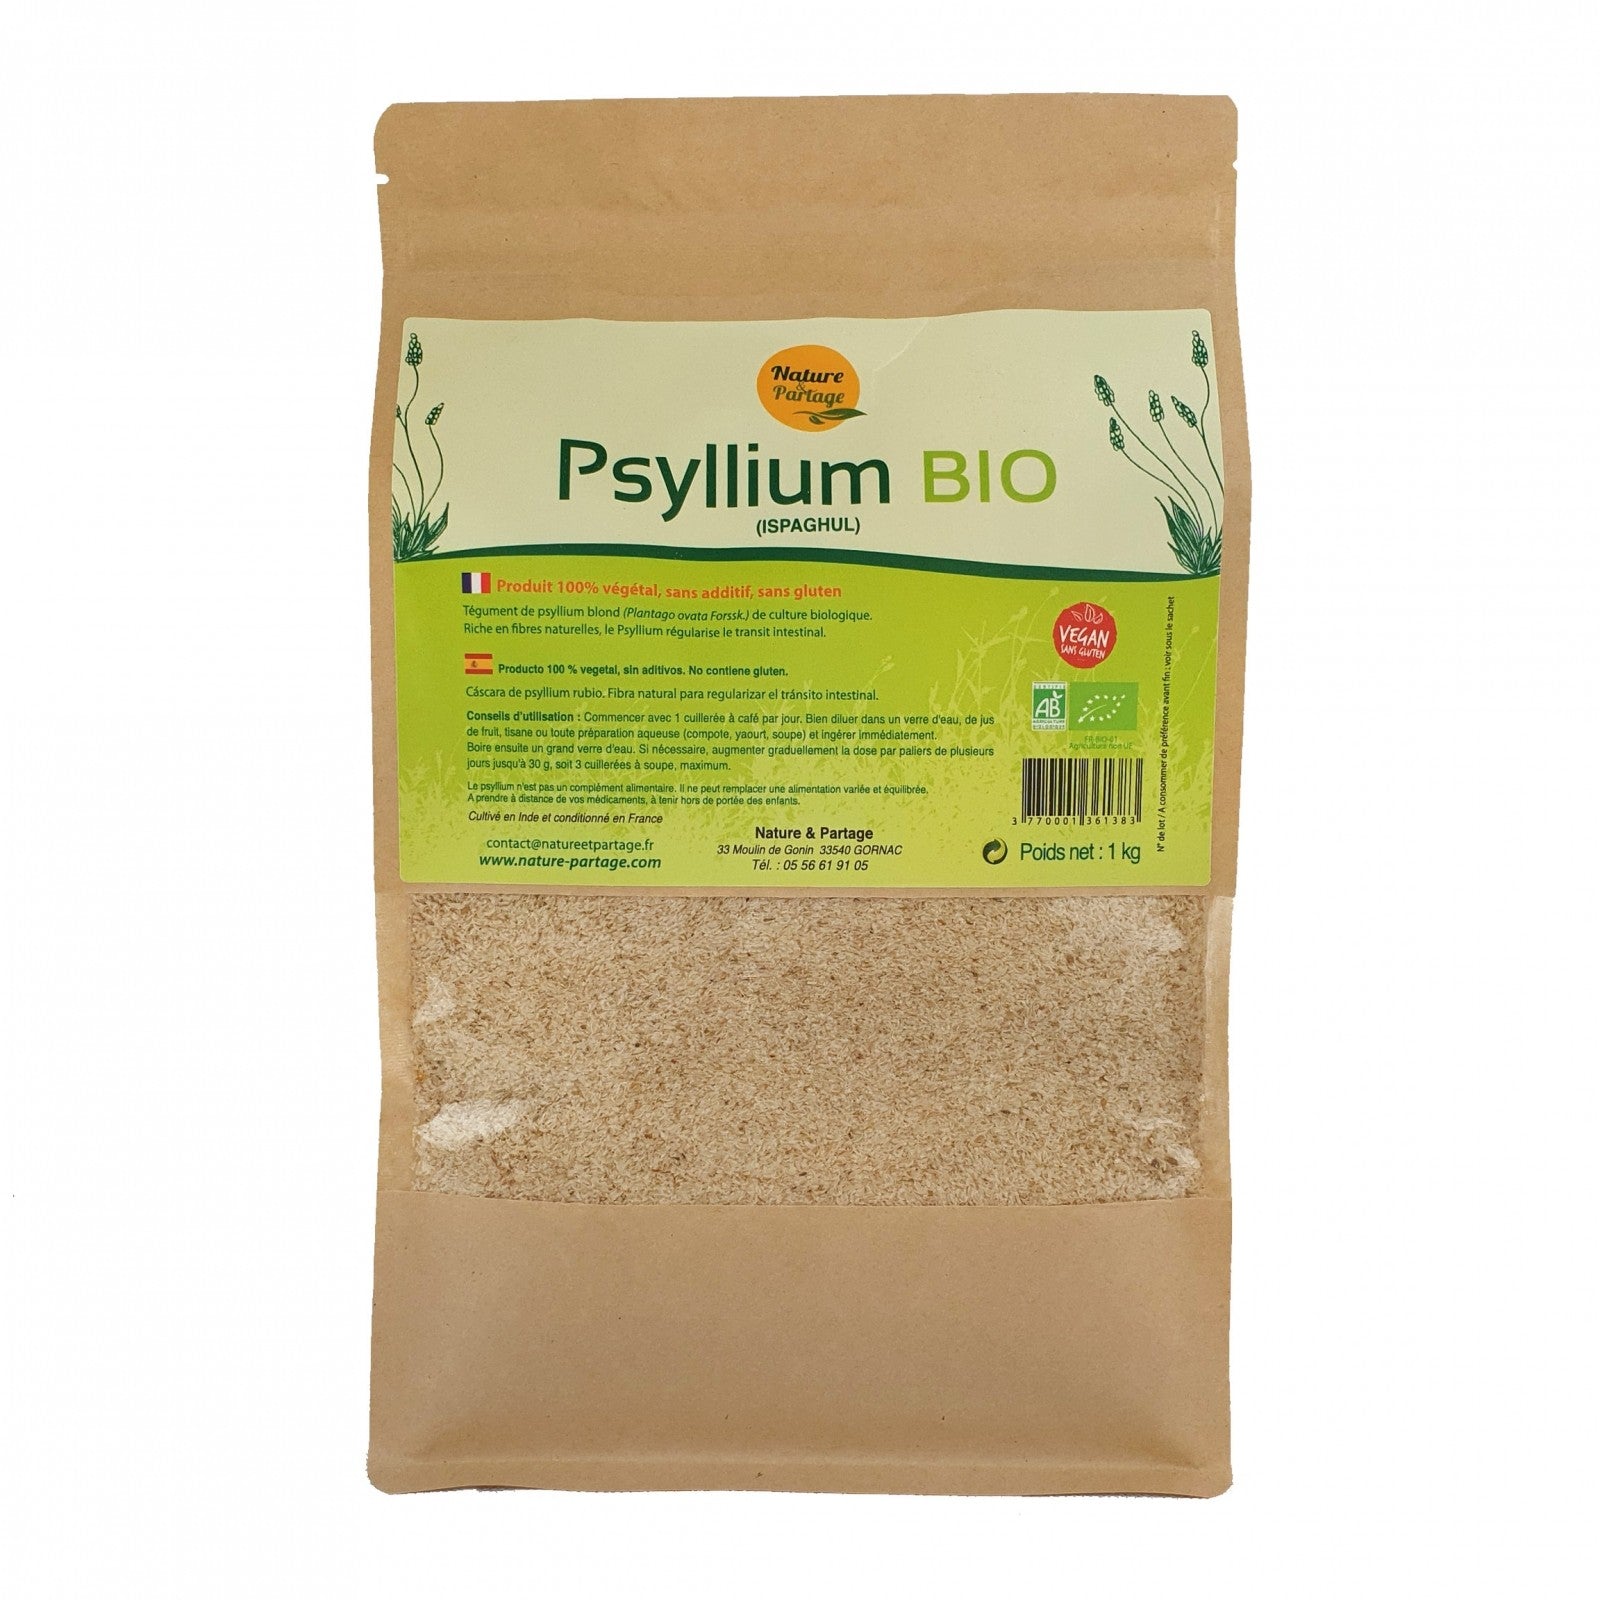 Psyllium blond bio - Vecteur santé